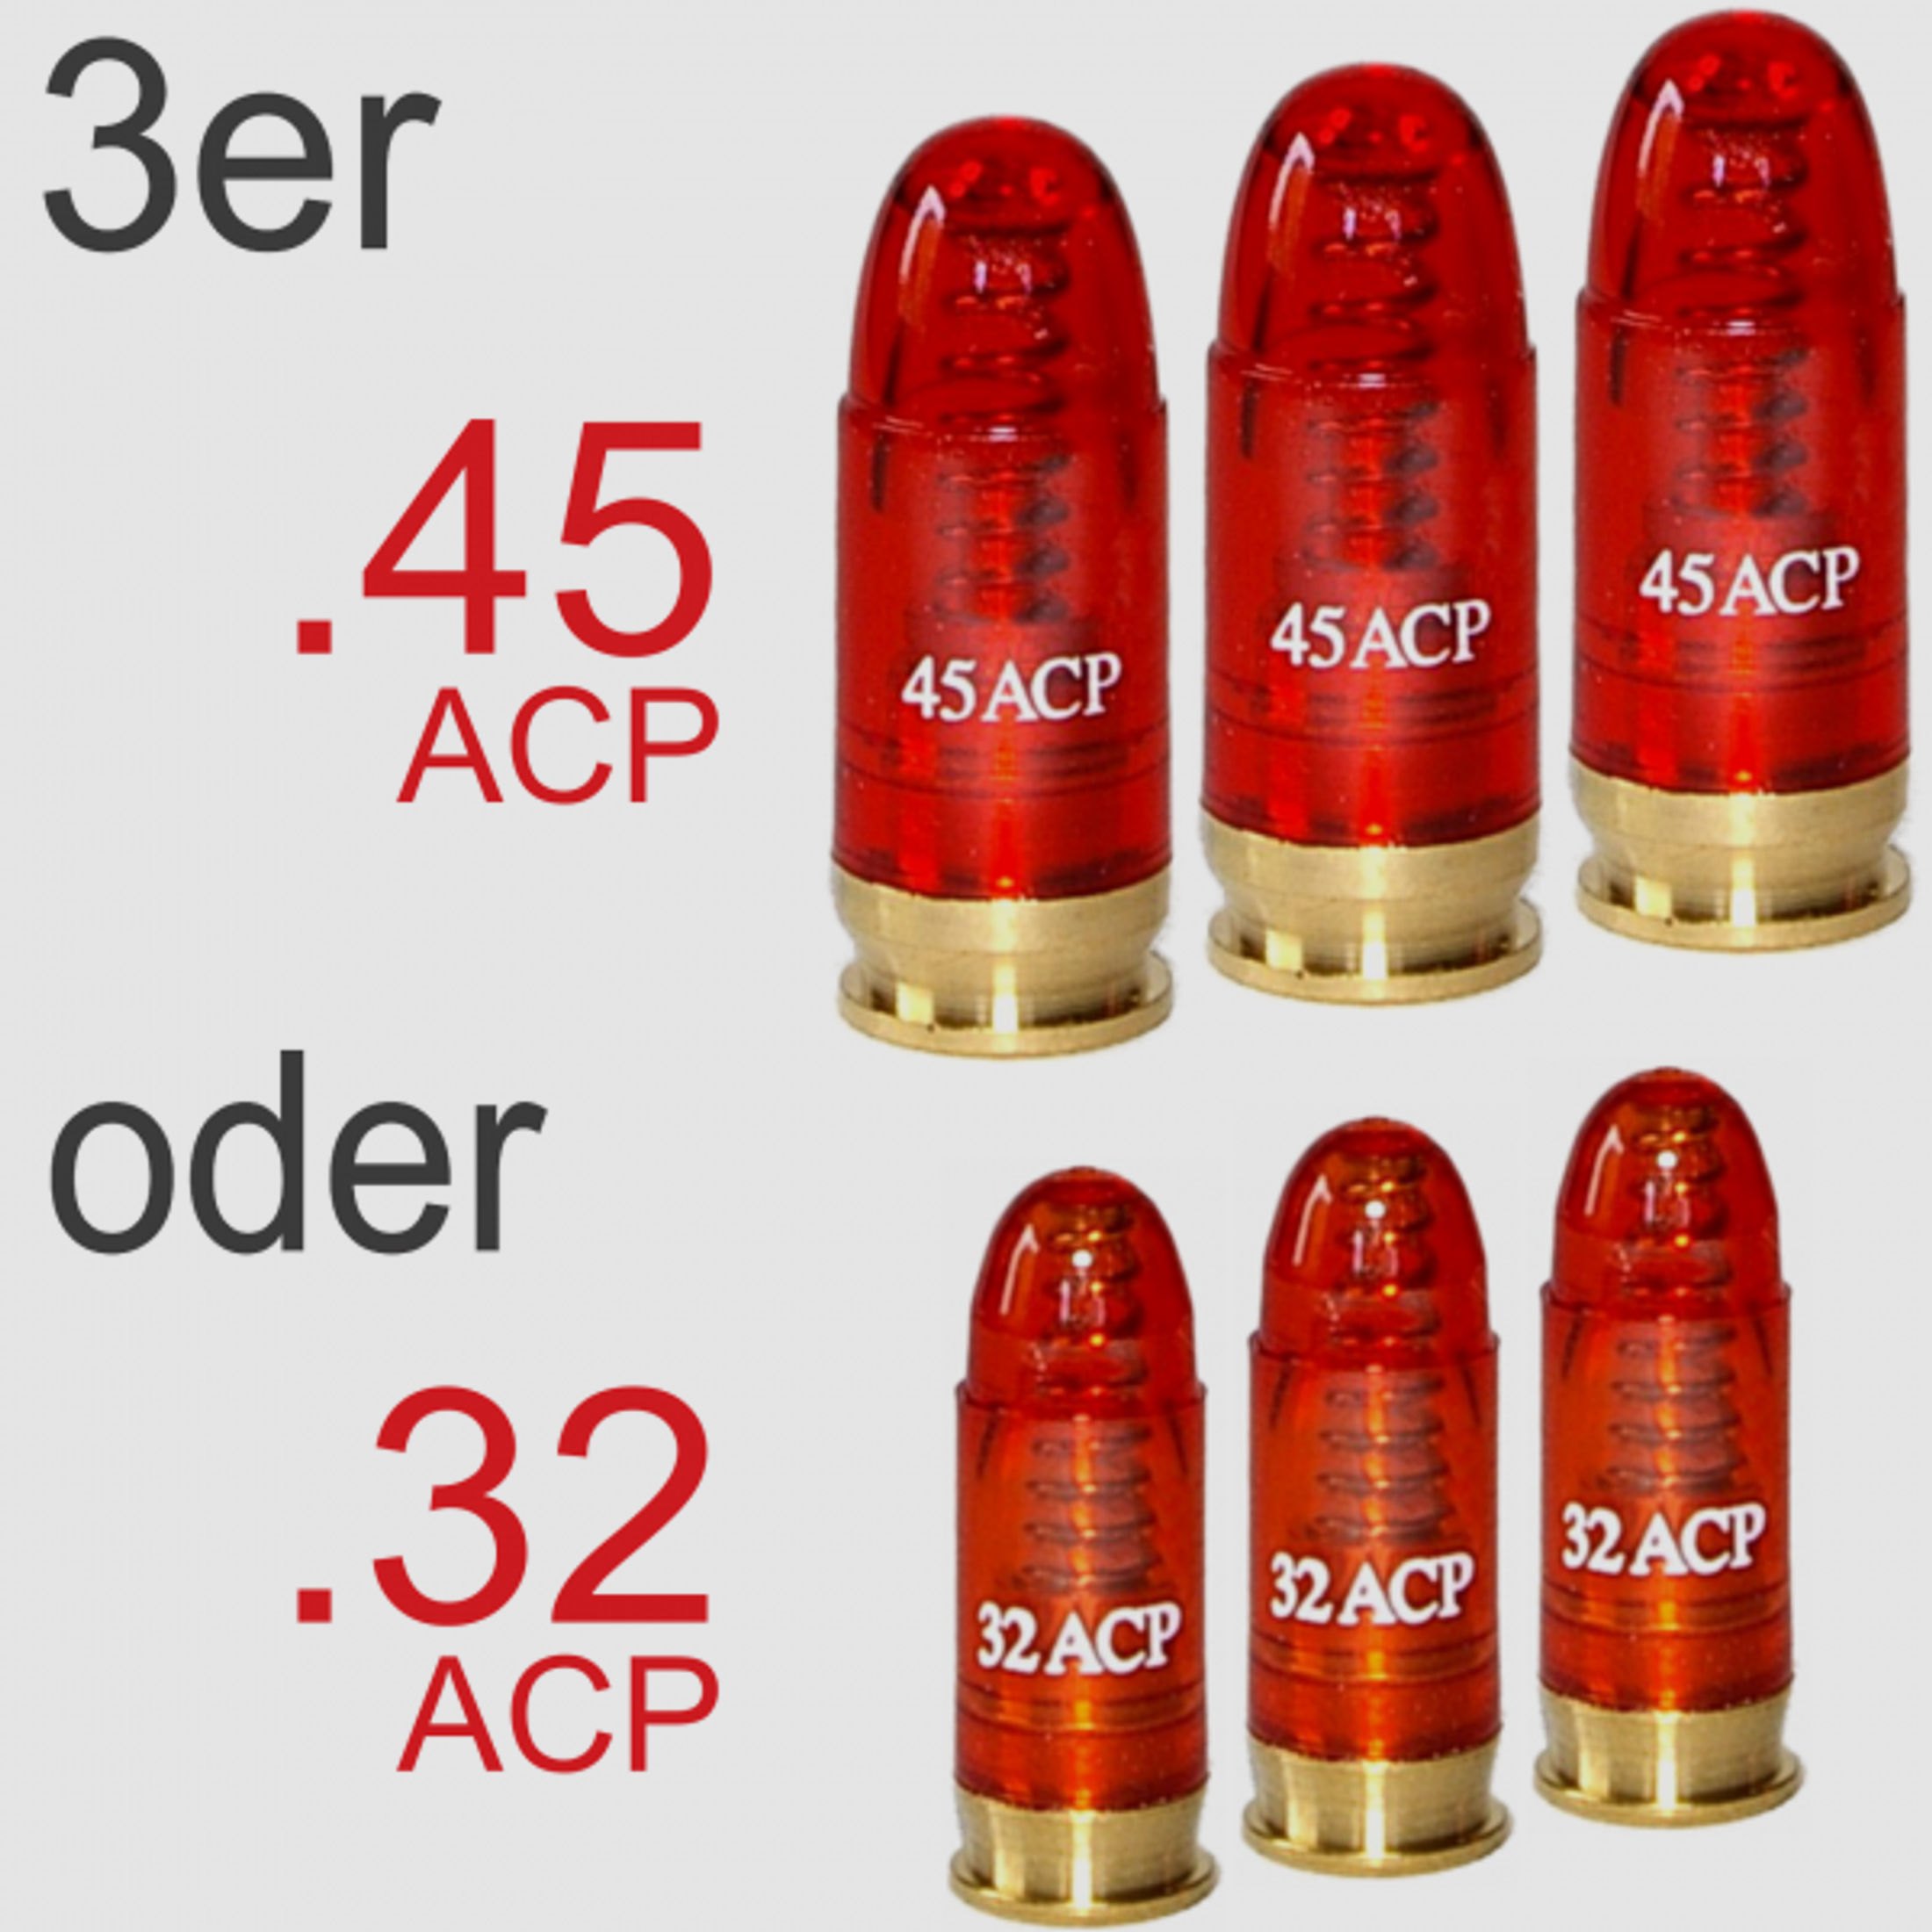 3er .45 ACP oder .32 ACP (7,65 Browning) Pufferpatronen!!!        ->TOP Angebot!!!<-